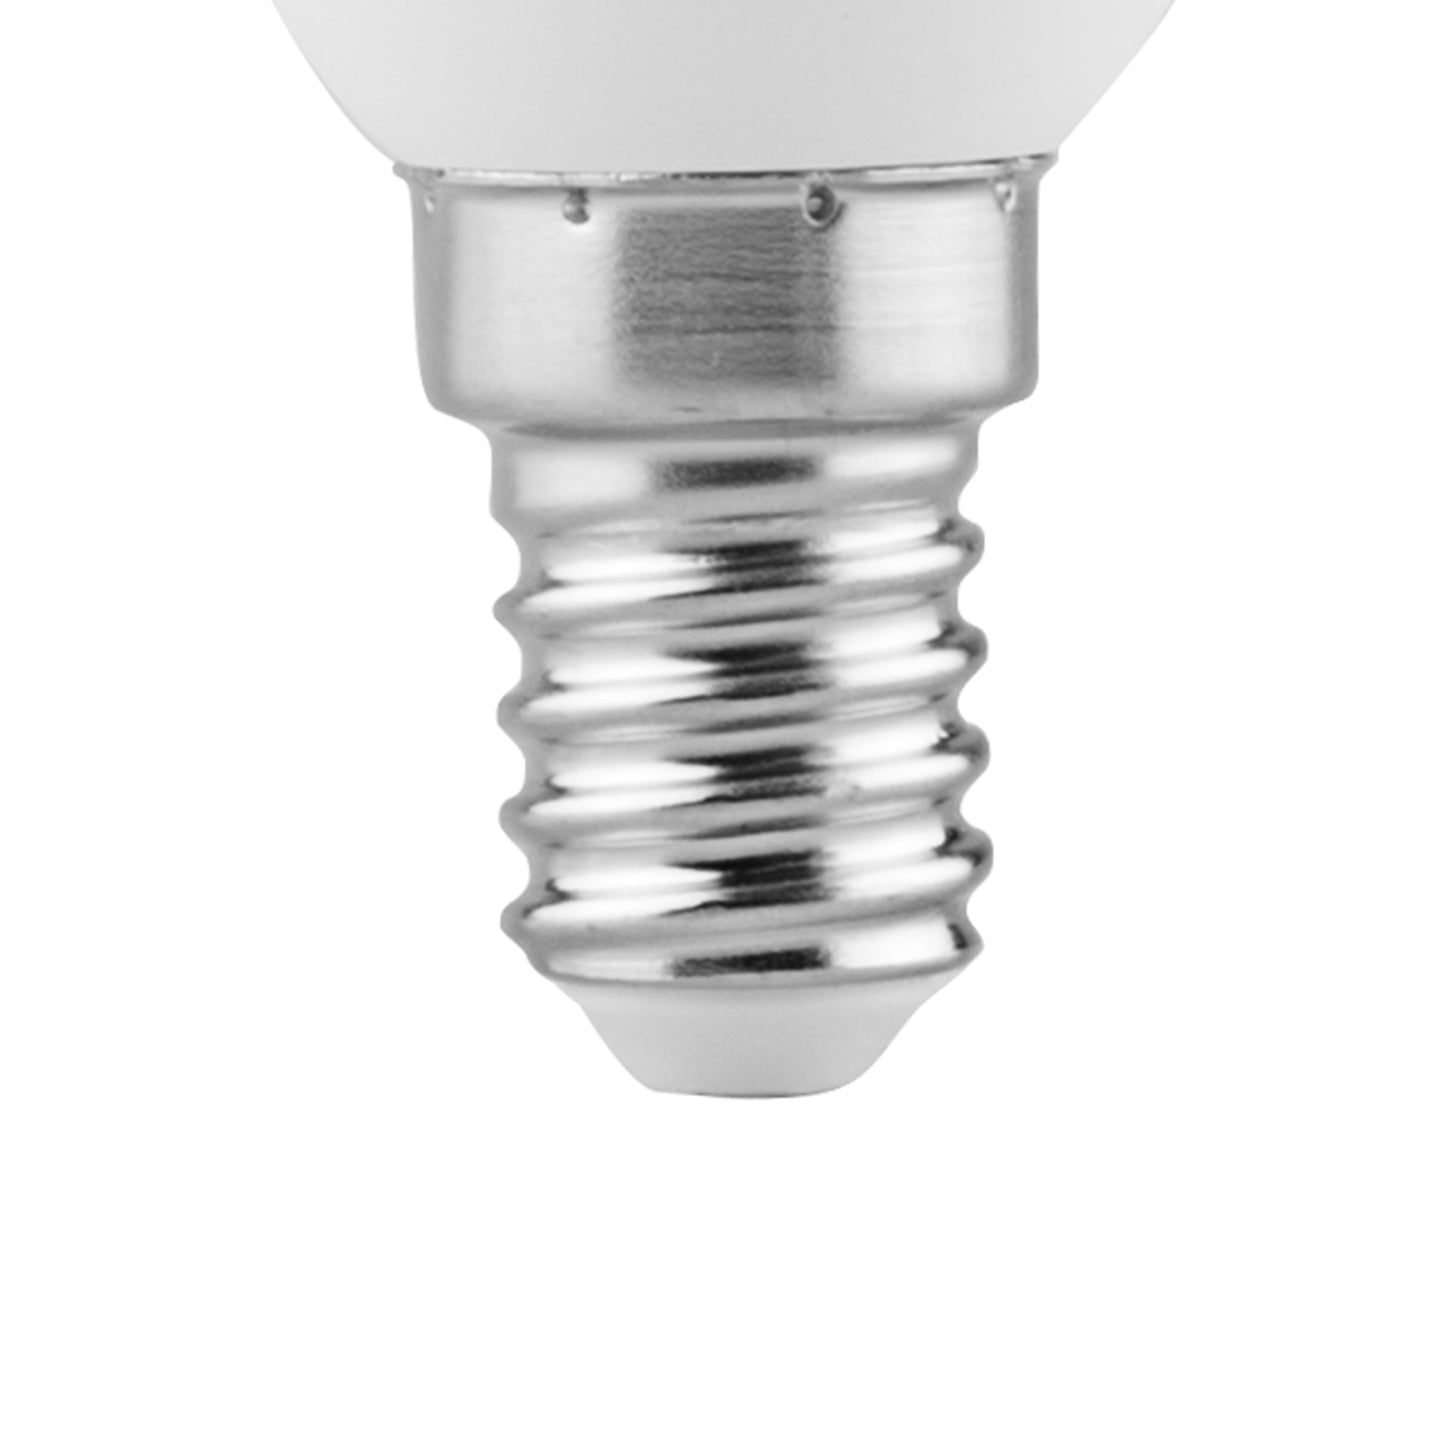 MATEL E14 LAMPE LED BOUGIE CHAUDE 5W (3 UNITÉS) 